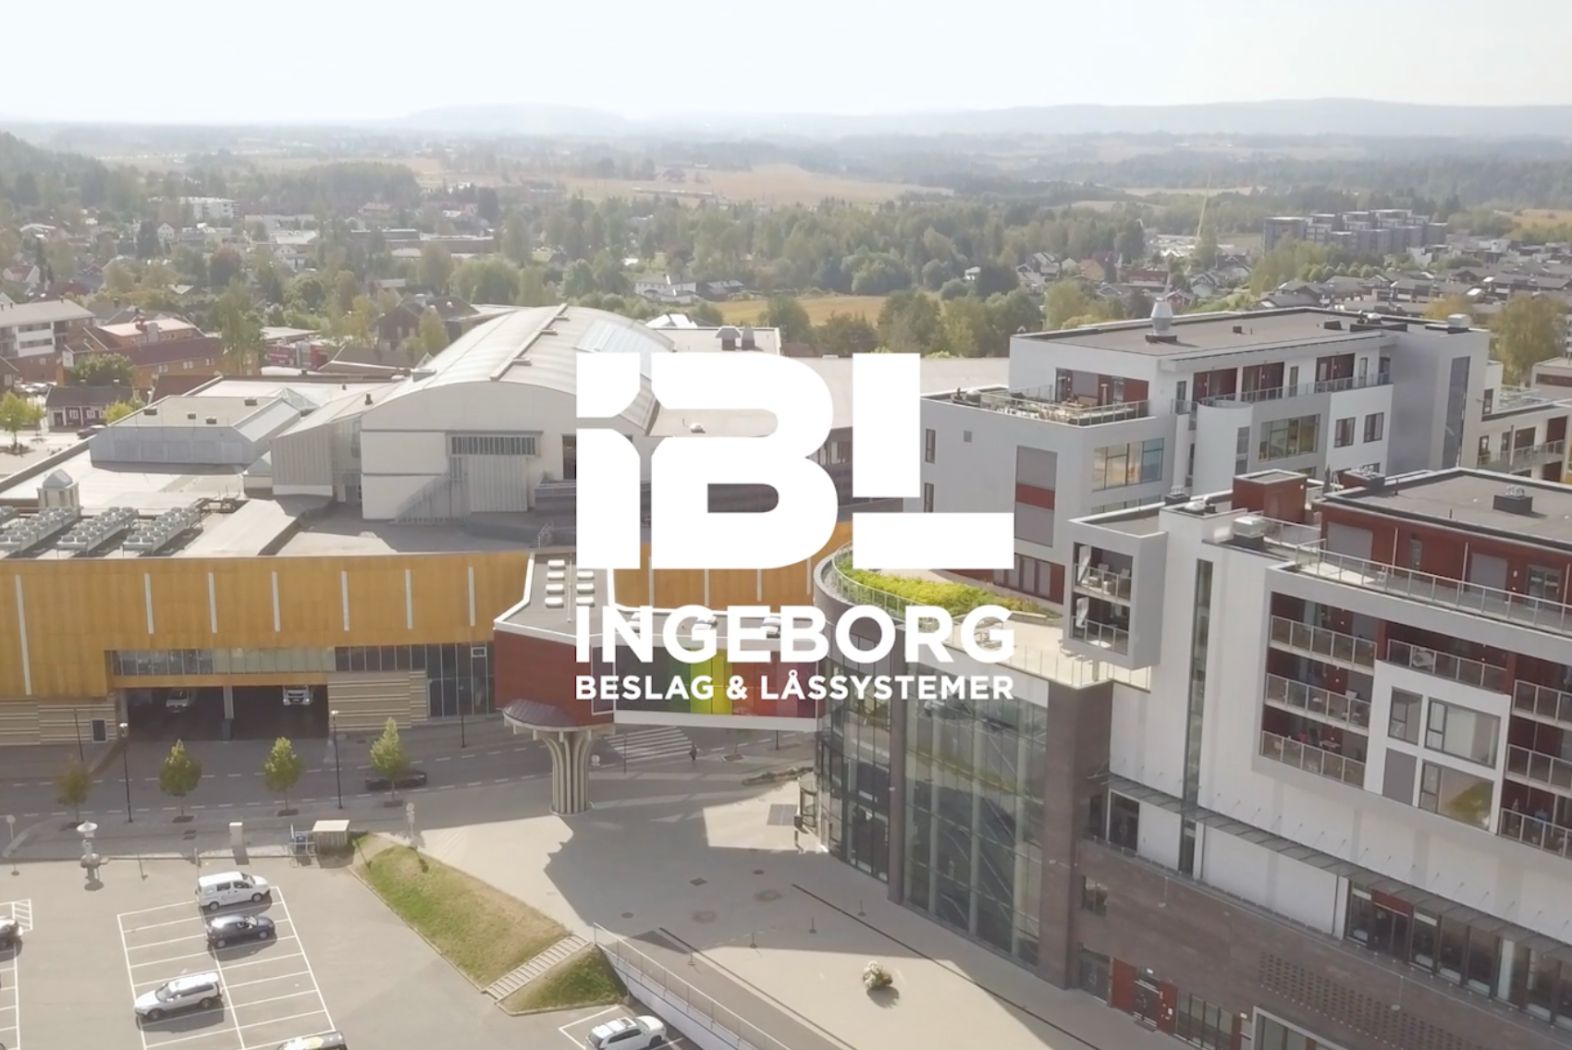 IBL logo